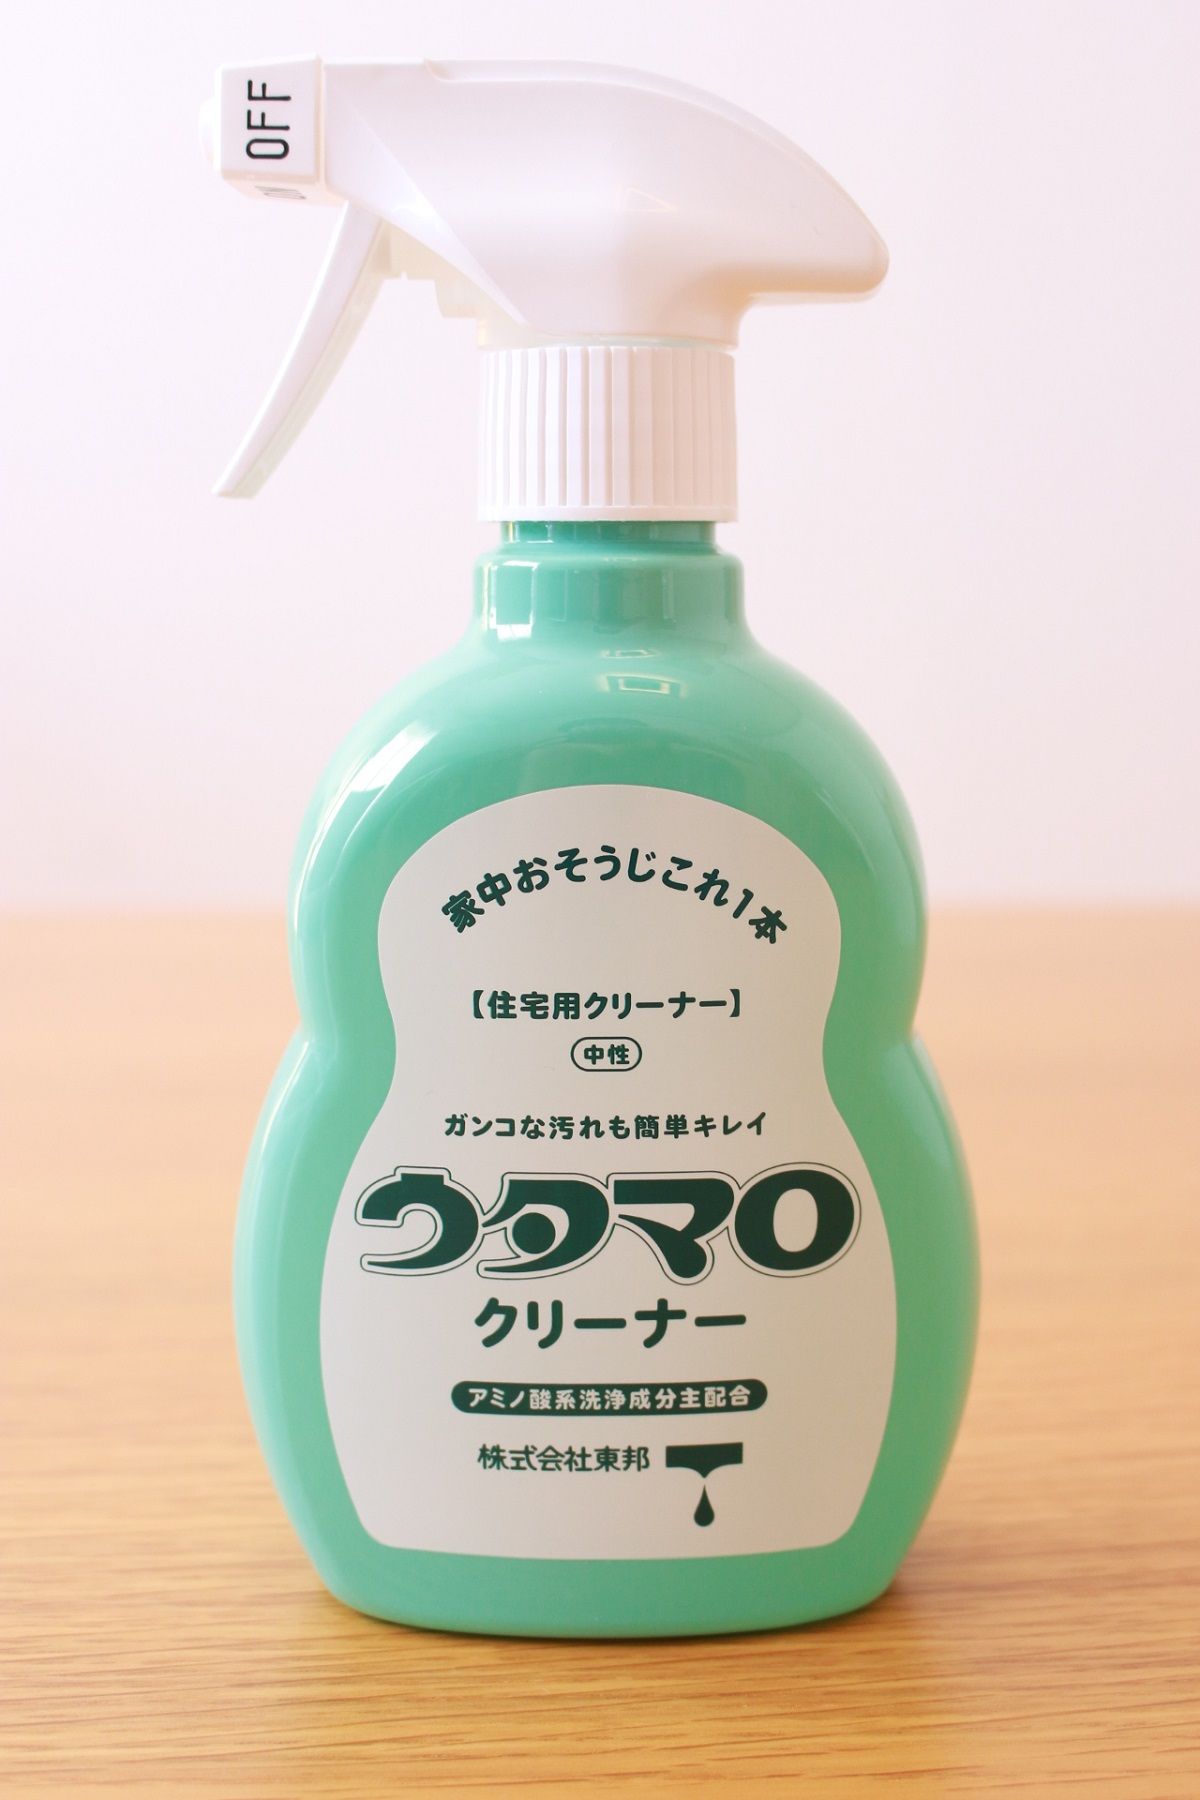 ウタマロクリーナーで家じゅうお掃除 素手でも使えて楽しく掃除ができました Kazuki Umeda 旧かずきのblog 楽天ブログ